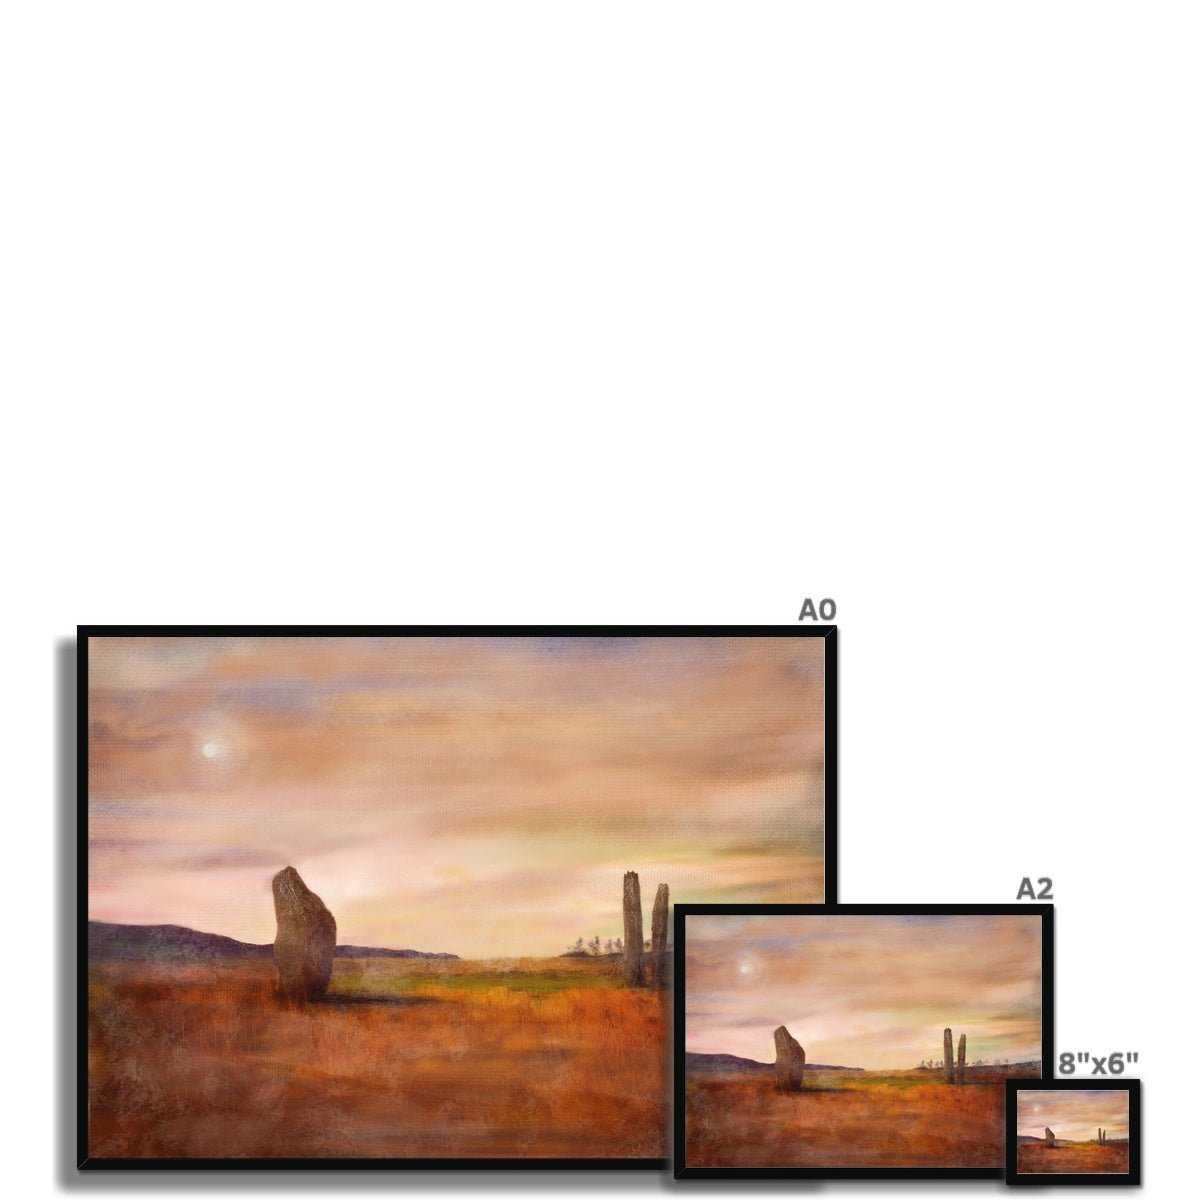 Machrie Moor Moonlight Painting | Framed Prints From Scotland-Framed Prints-Arran Art Gallery-Paintings, Prints, Homeware, Art Gifts From Scotland By Scottish Artist Kevin Hunter